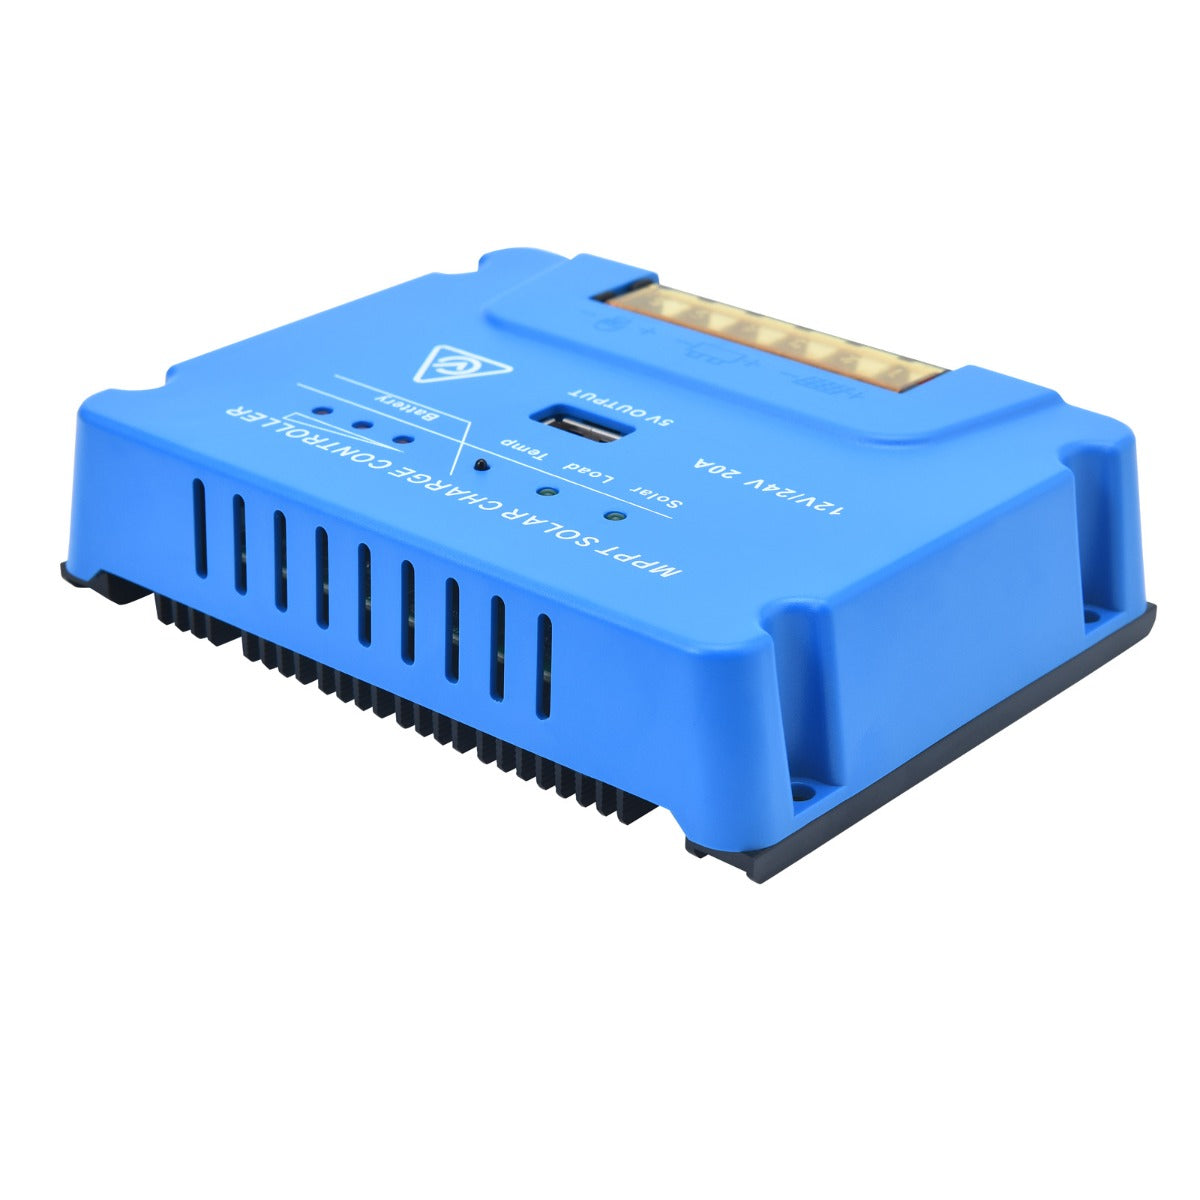 12V/24V 20A MPPT Solar Panel Battery Regulator Charge Controller - USB 5V